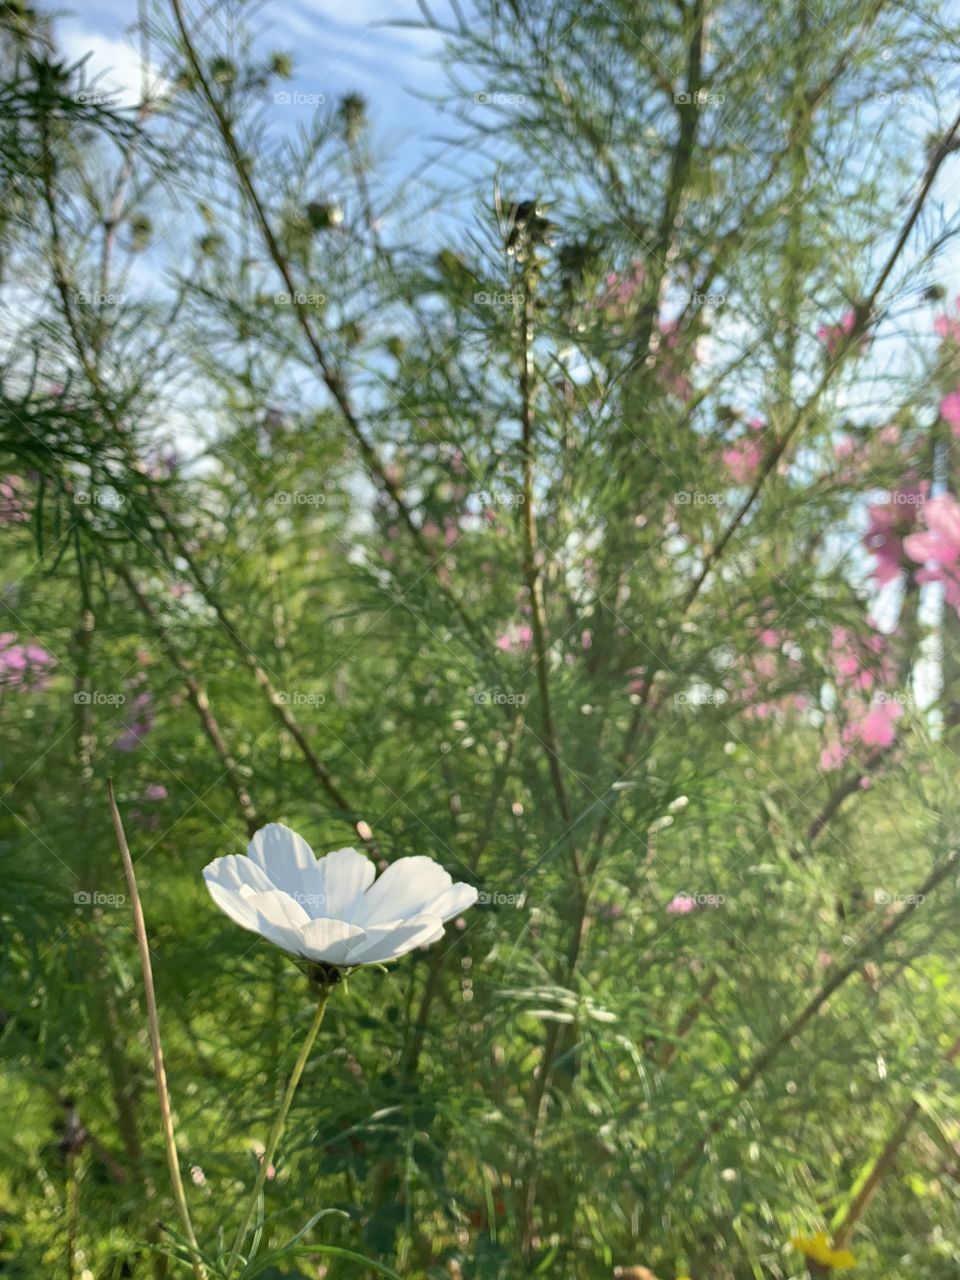 White flower in a field